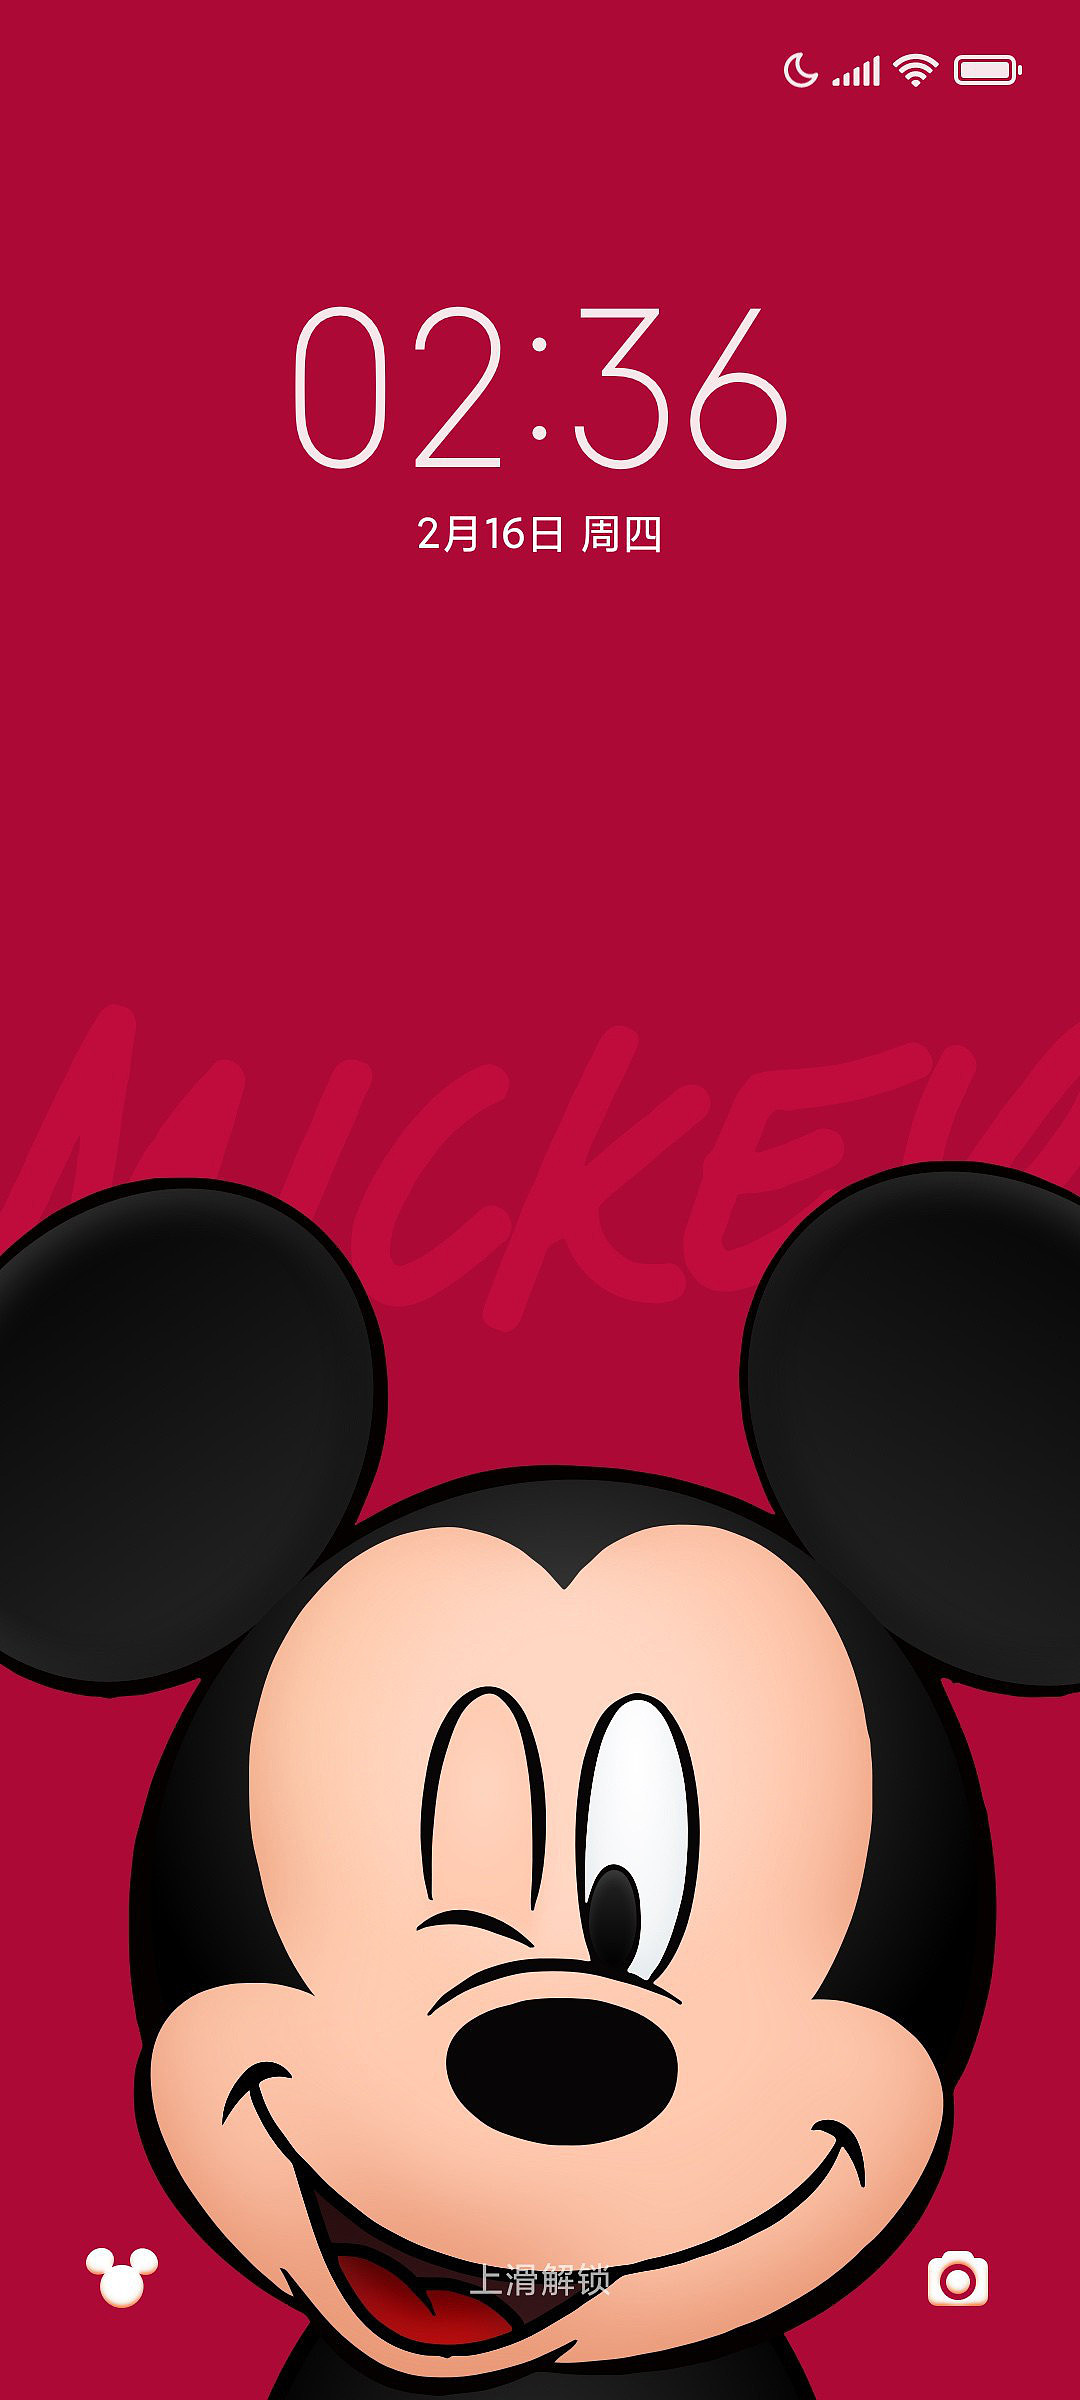 小米 Civi 3 迪士尼 100 周年限定版手机 6 月初上市：米奇老鼠主题 UI 等曝光 - 5